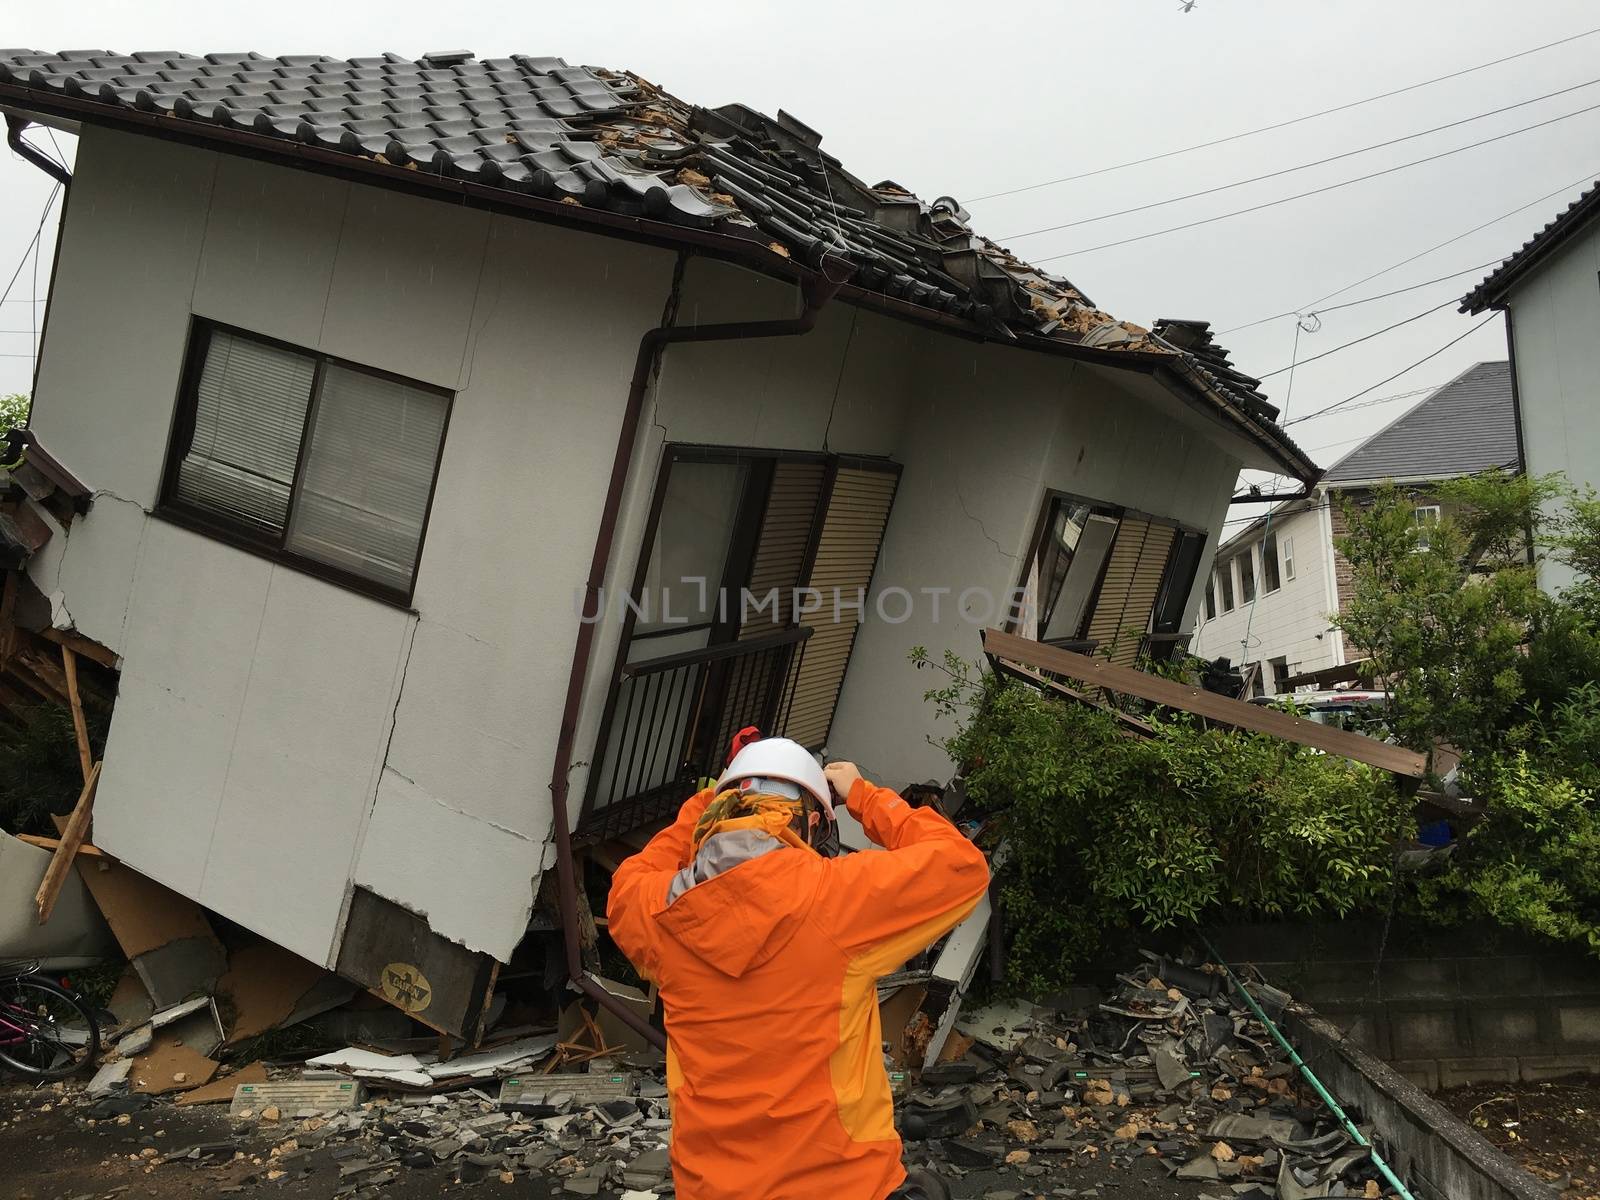 JAPAN - KUMAMOTO - EARTHQUAKE by newzulu